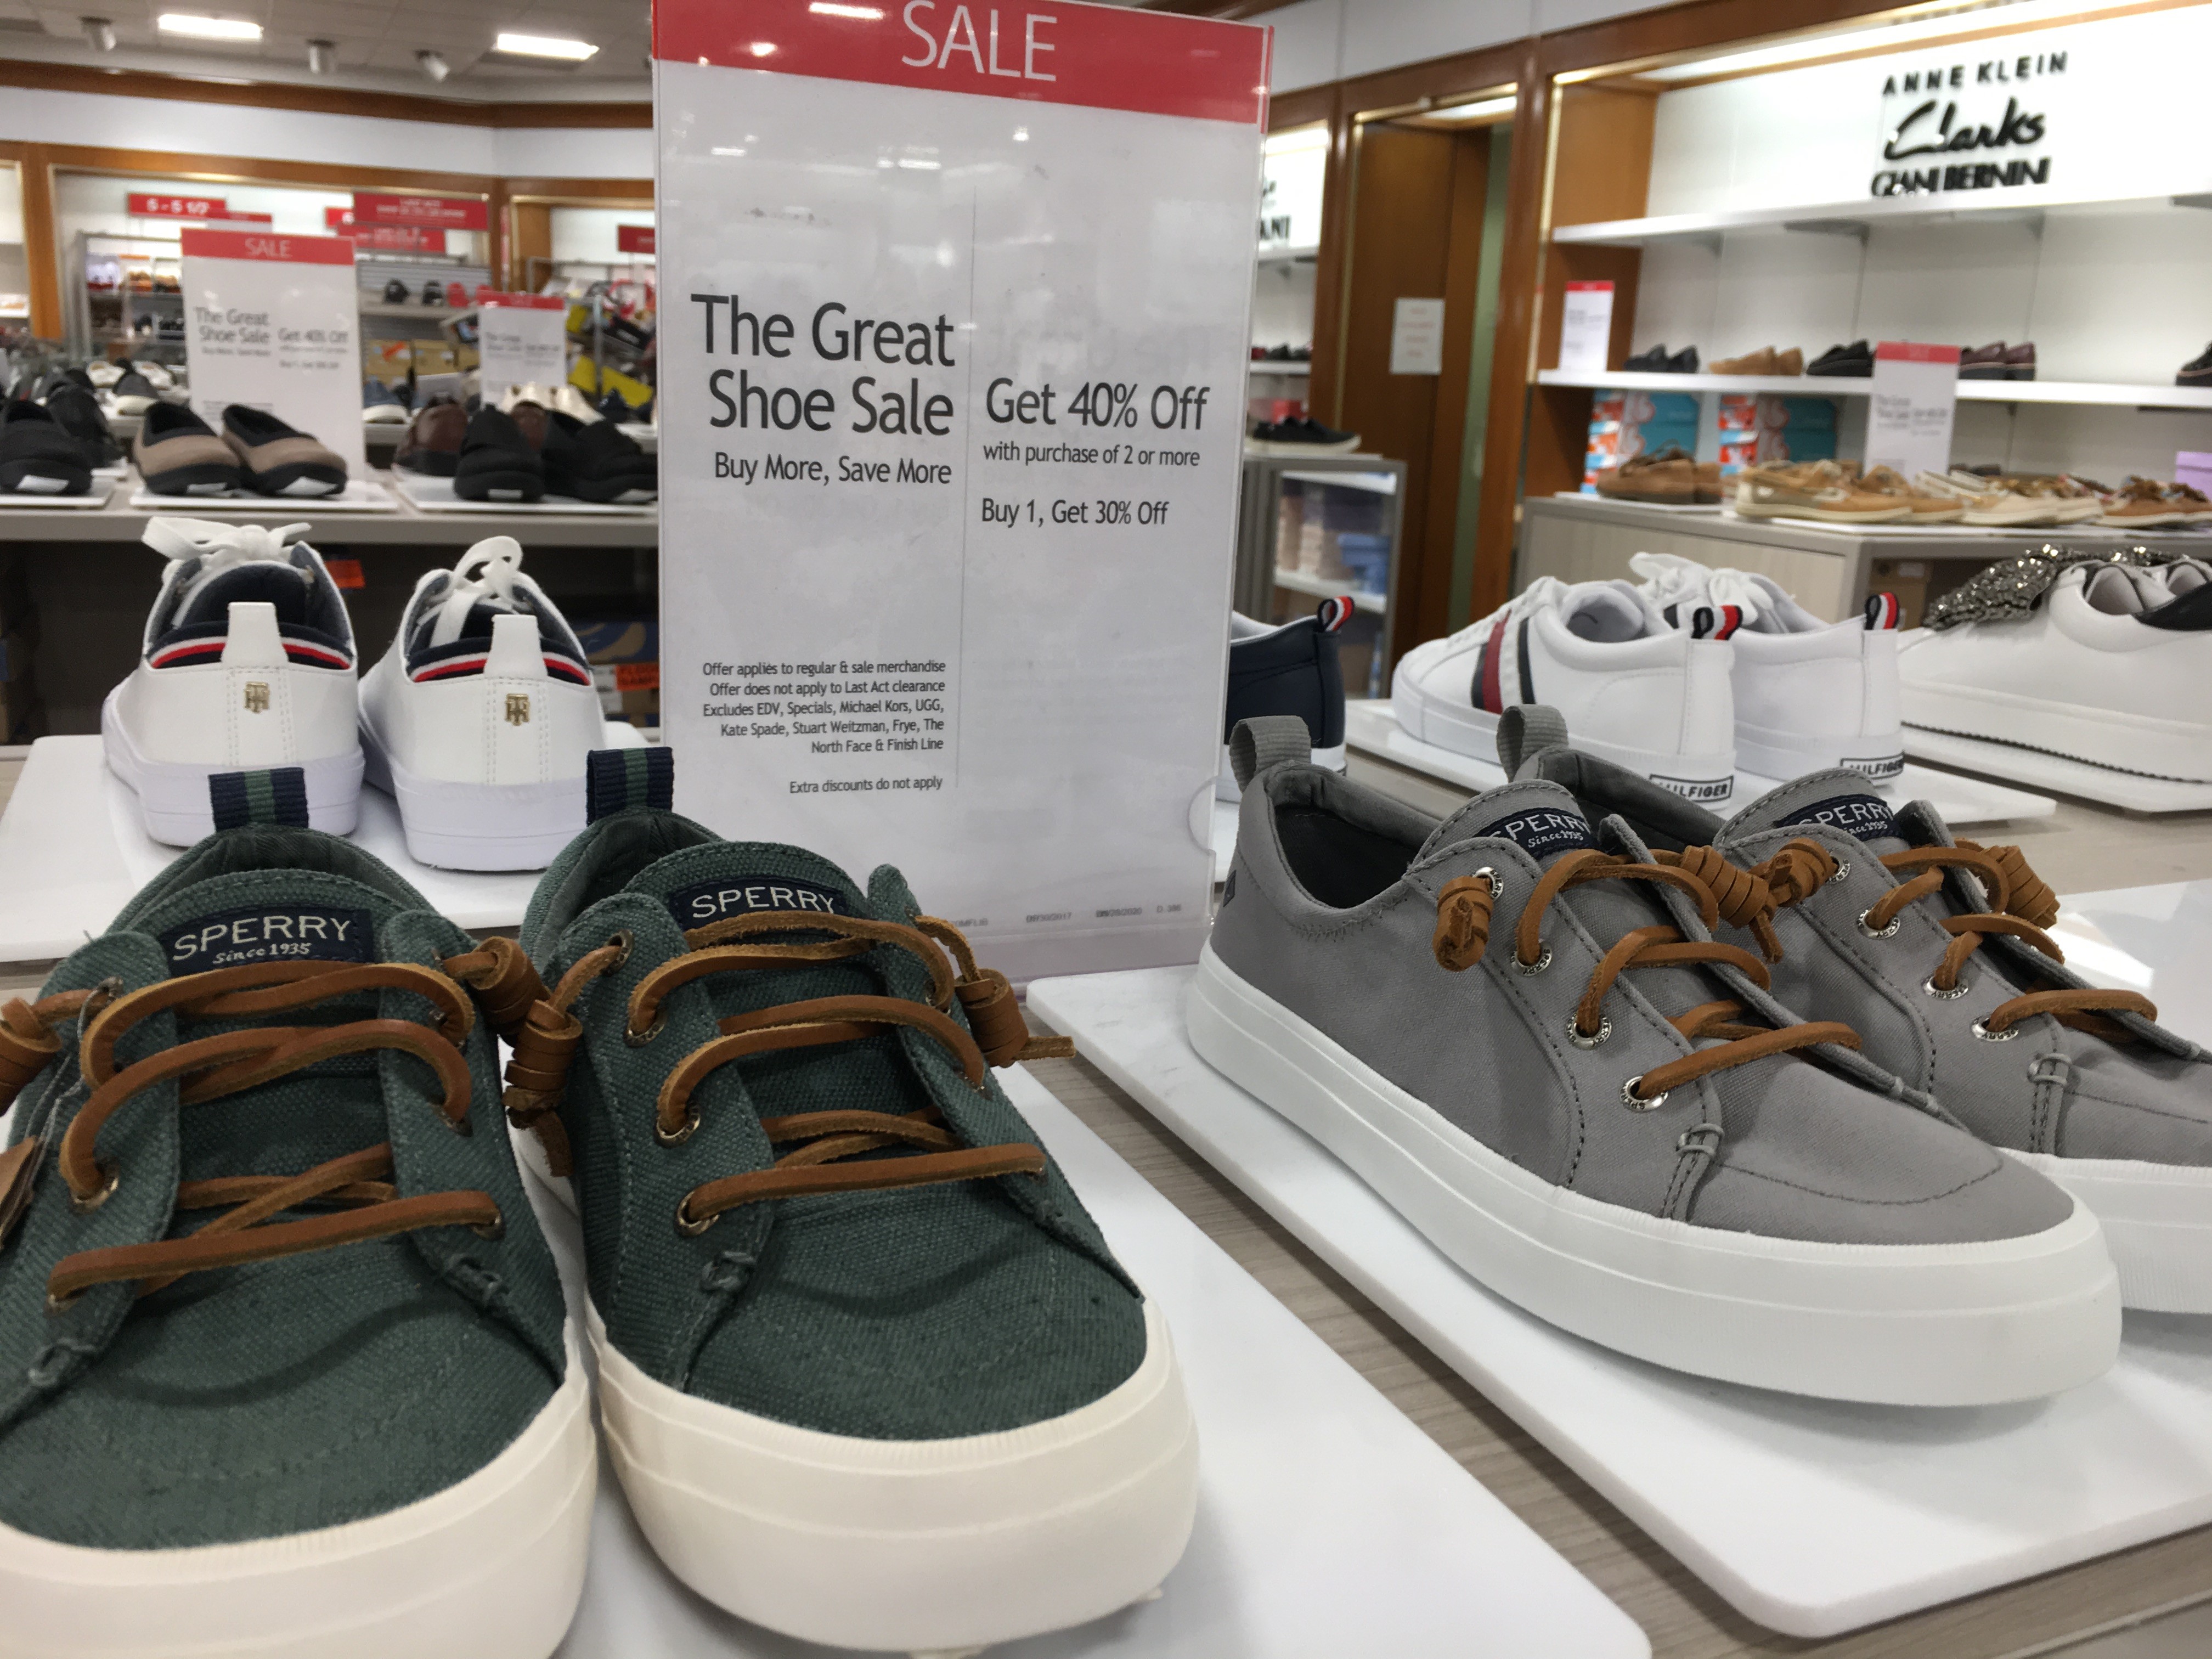 macy's great shoe sale 2019